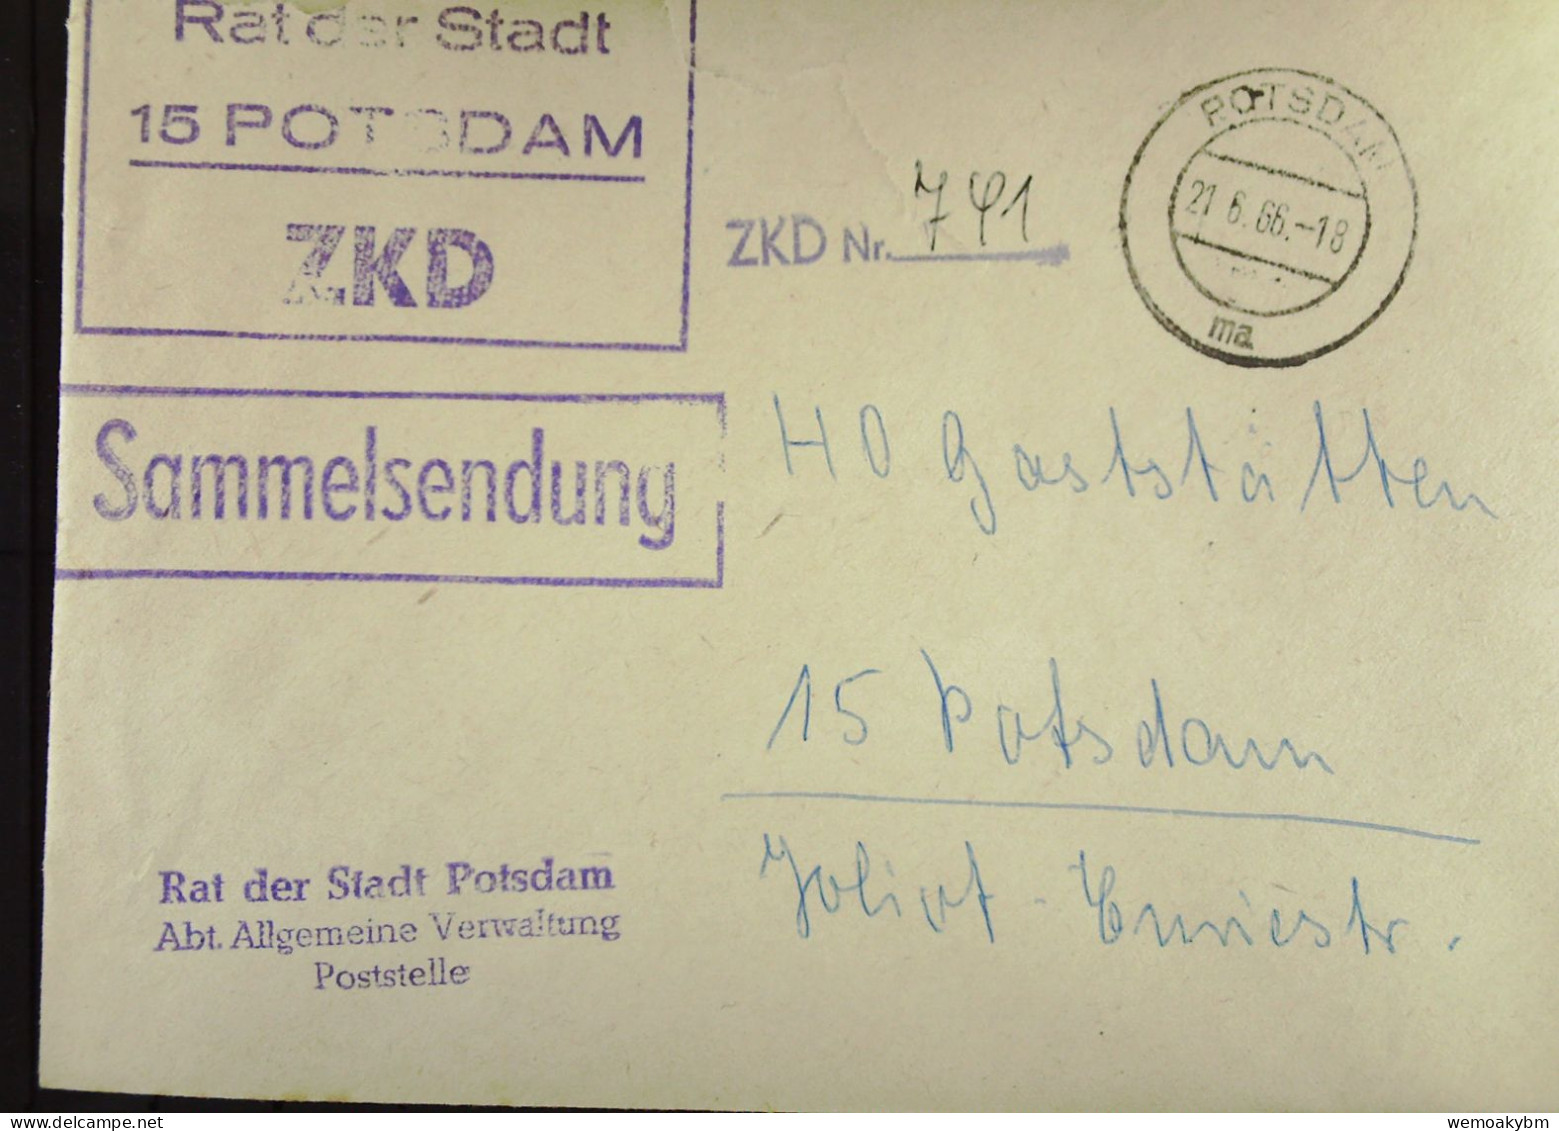 Orts-Brief Mit ZKD-Kastenst "Rat Der Stadt 15 POTSDAM" Vom 21.6.66 An HO Gaststätten Potsdam "Sammelsendung"-ZKD-Nr. 741 - Lettres & Documents